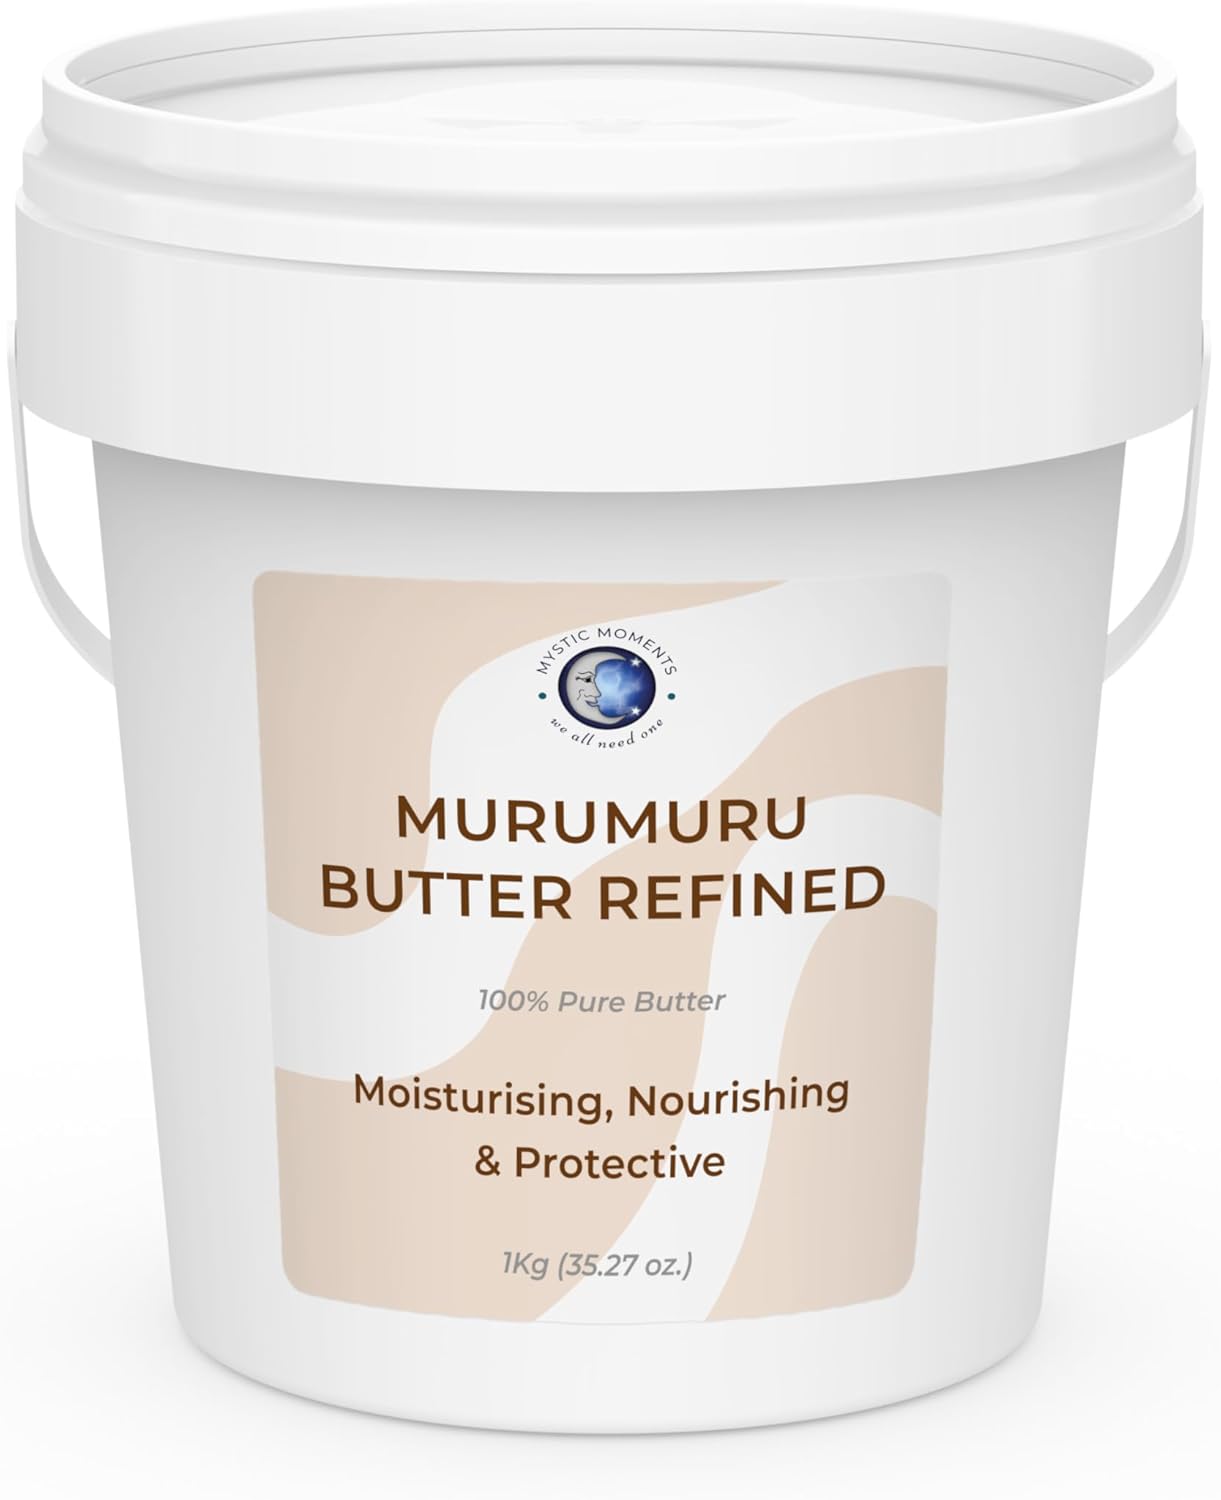 Mystic Moments | Murumuru Butter Refined Butter 1Kg - Pure & Natural Cosmetic Butters Vegan GMO Free